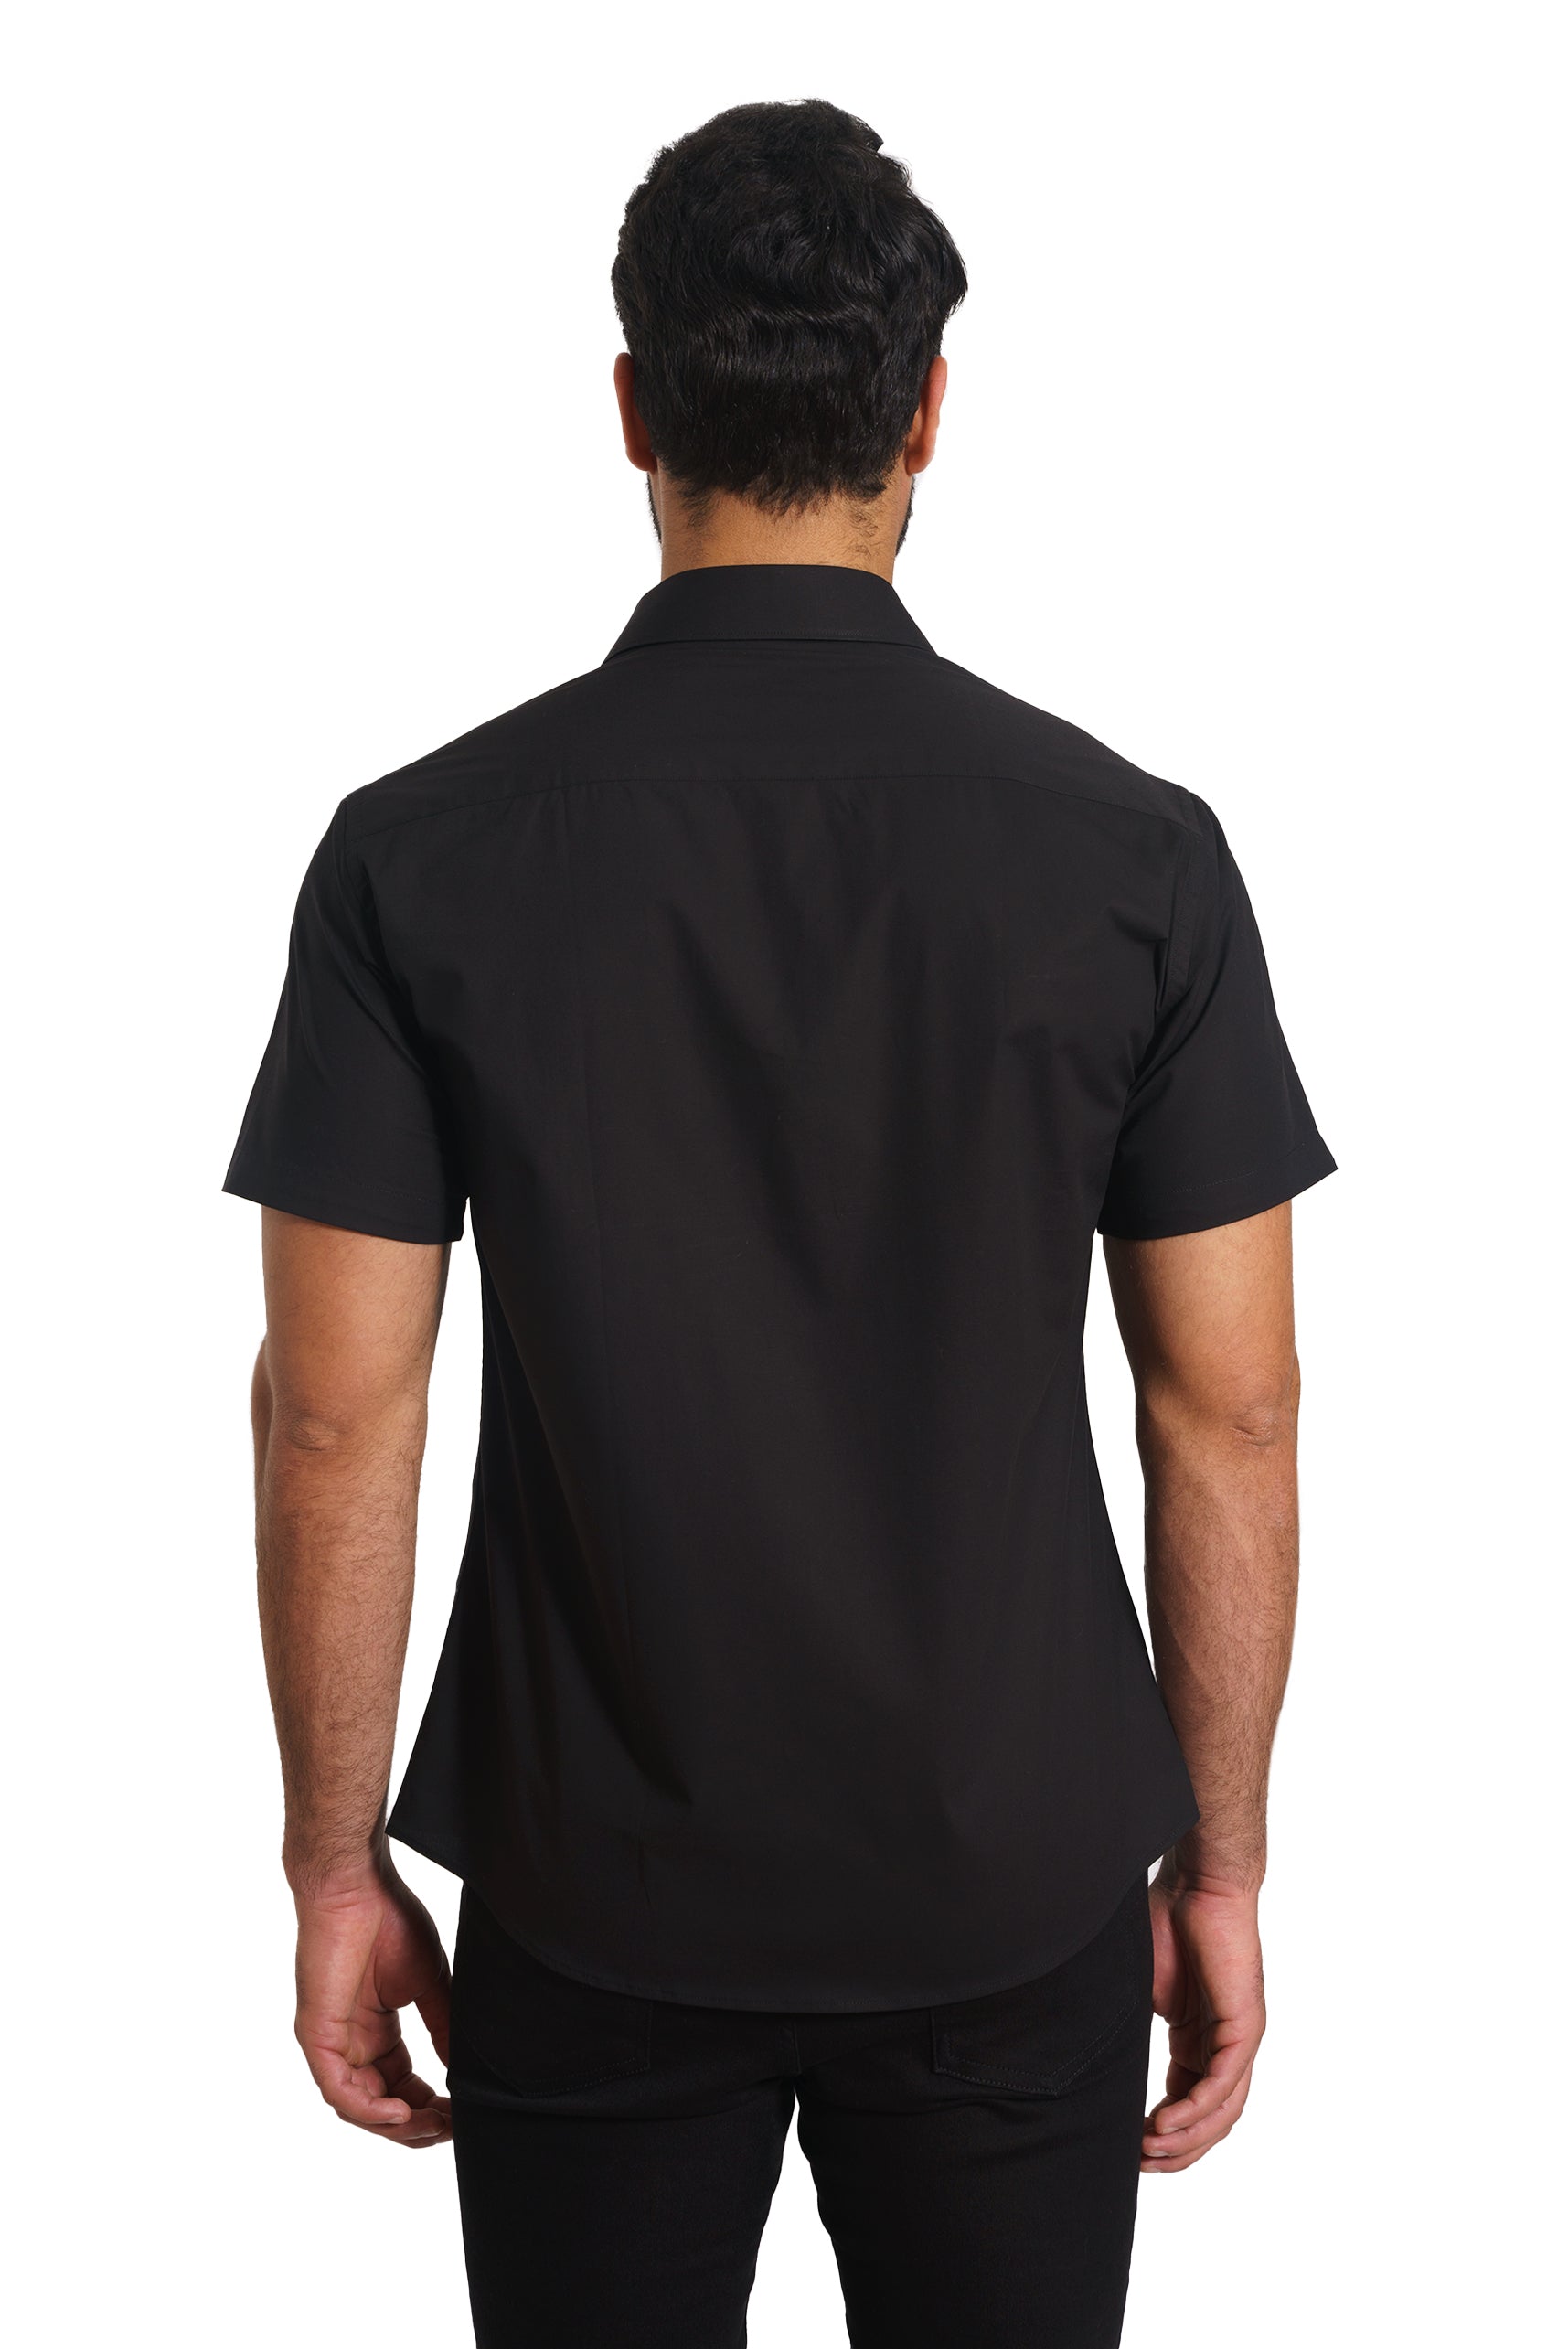 Black Short Sleeve Shirt TH-2870SS Back